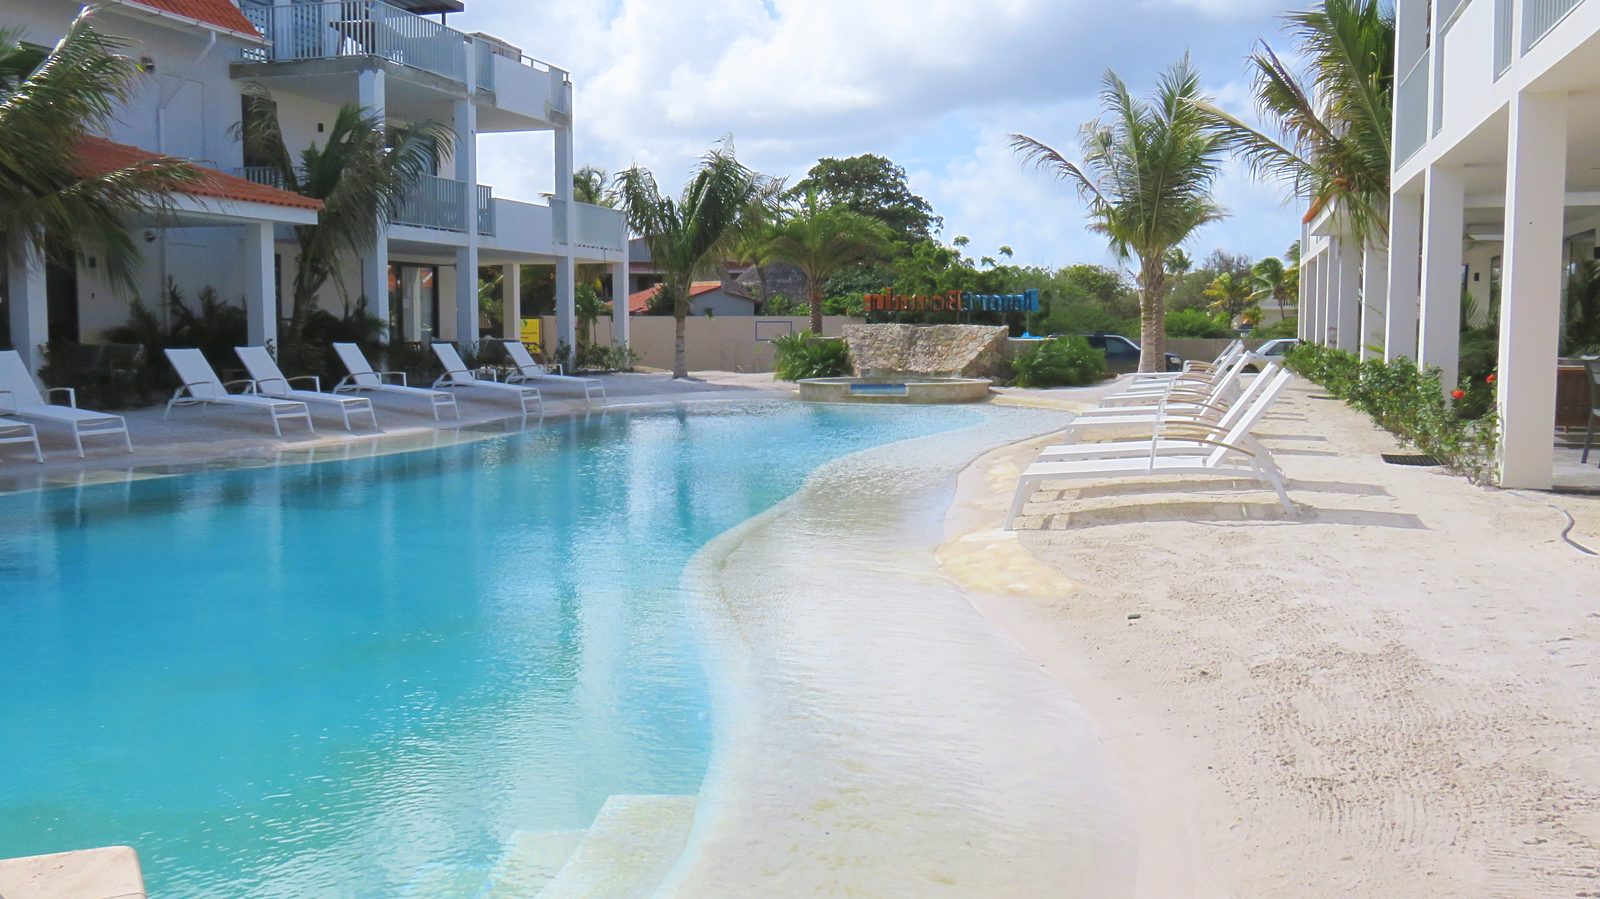 Explore a piscina do Resort Bonaire. Esta piscina com praia é onde poderá relaxar e desfrutar do clima. As crianças também vão se divertir muito.